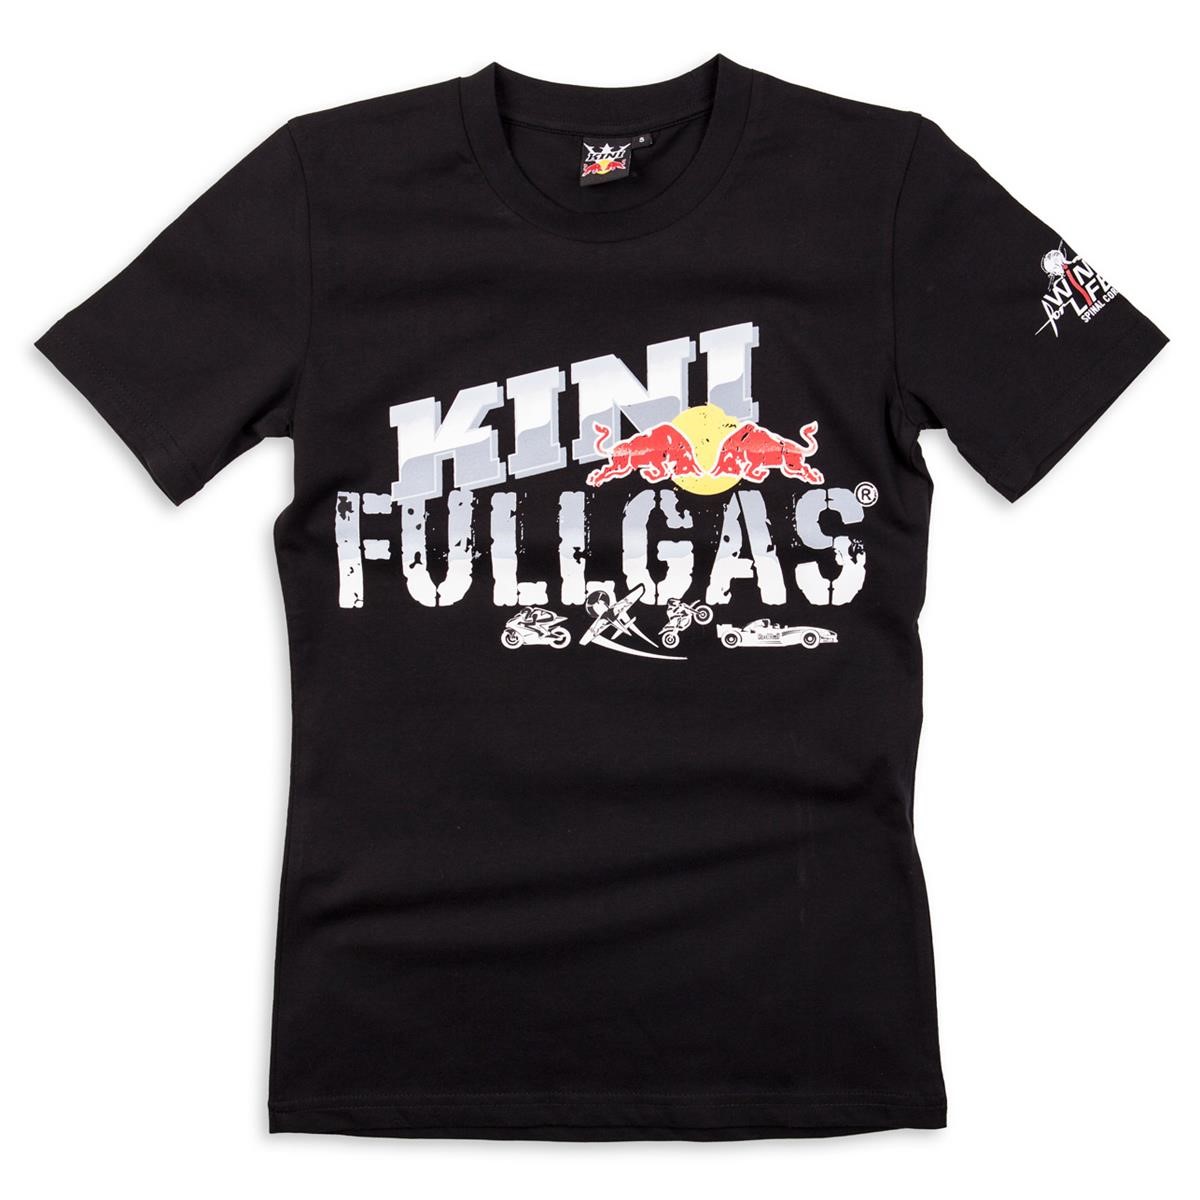 Kini Red Bull Girls T-Shirt Fullgas Schwarz